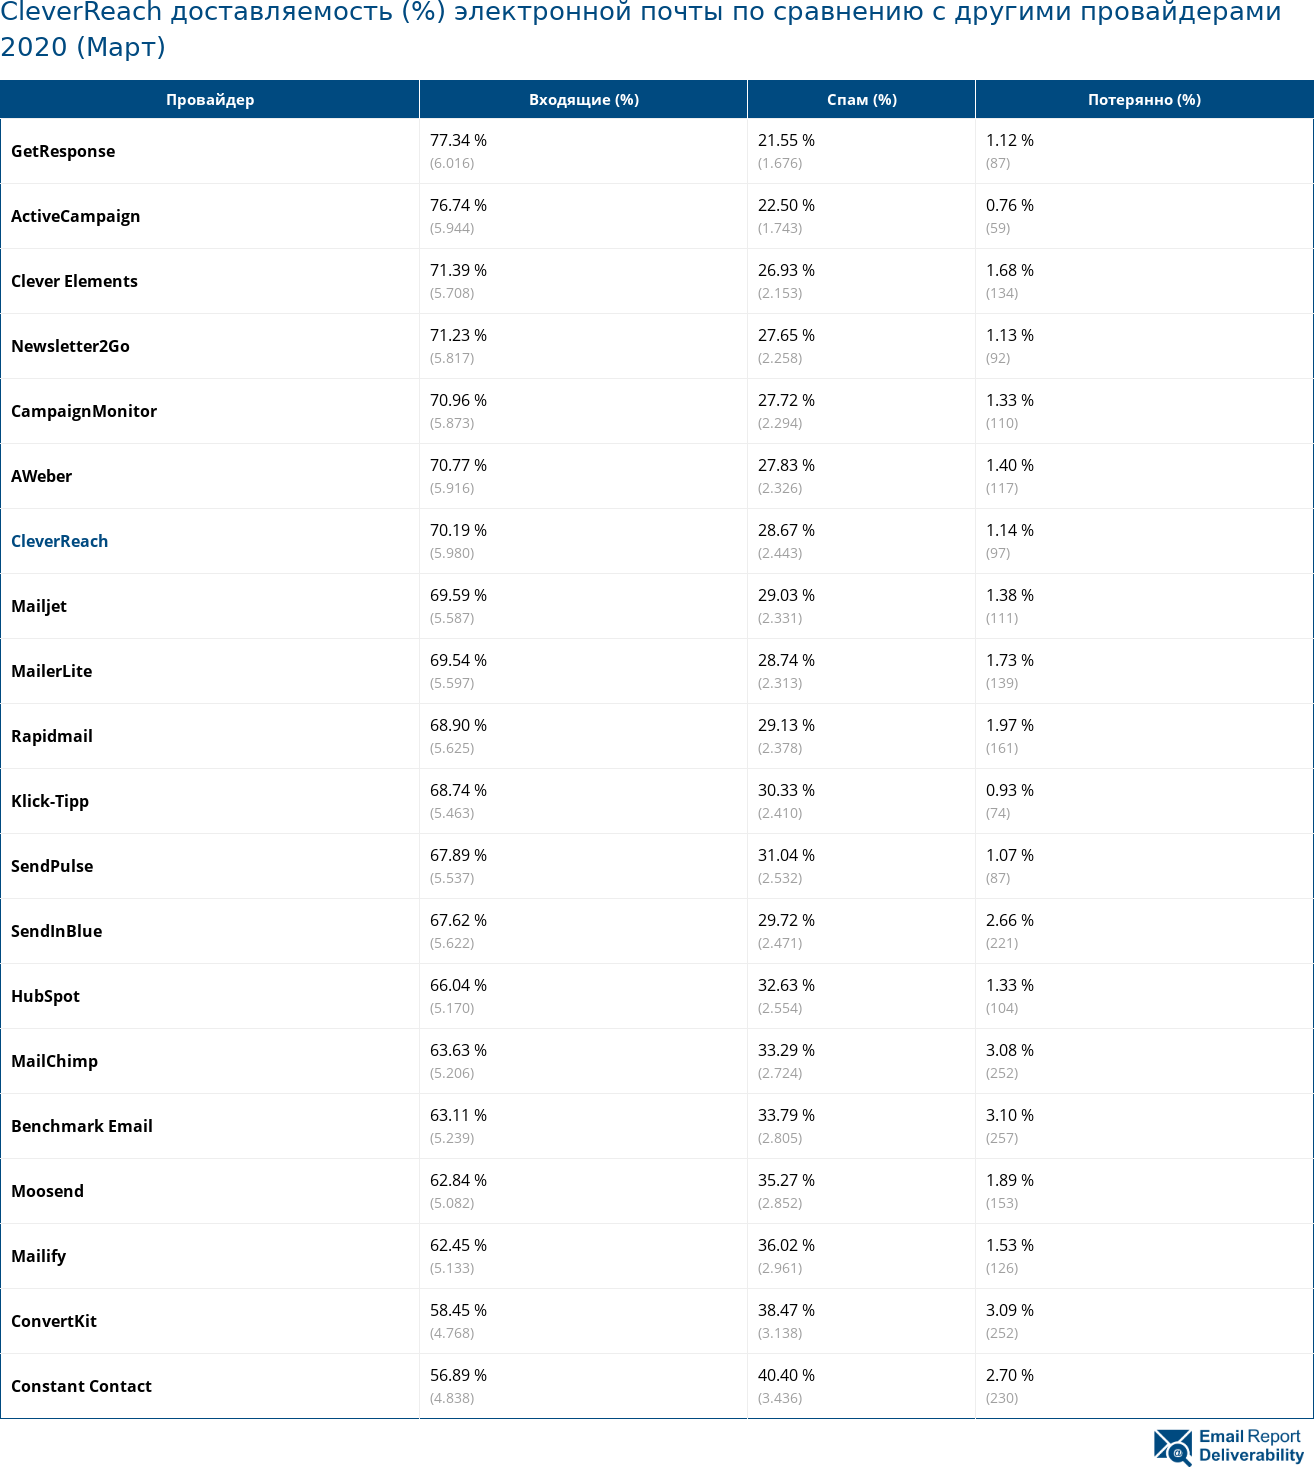 CleverReach доставляемость (%) электронной почты по сравнению с другими провайдерами 2020 (Март)